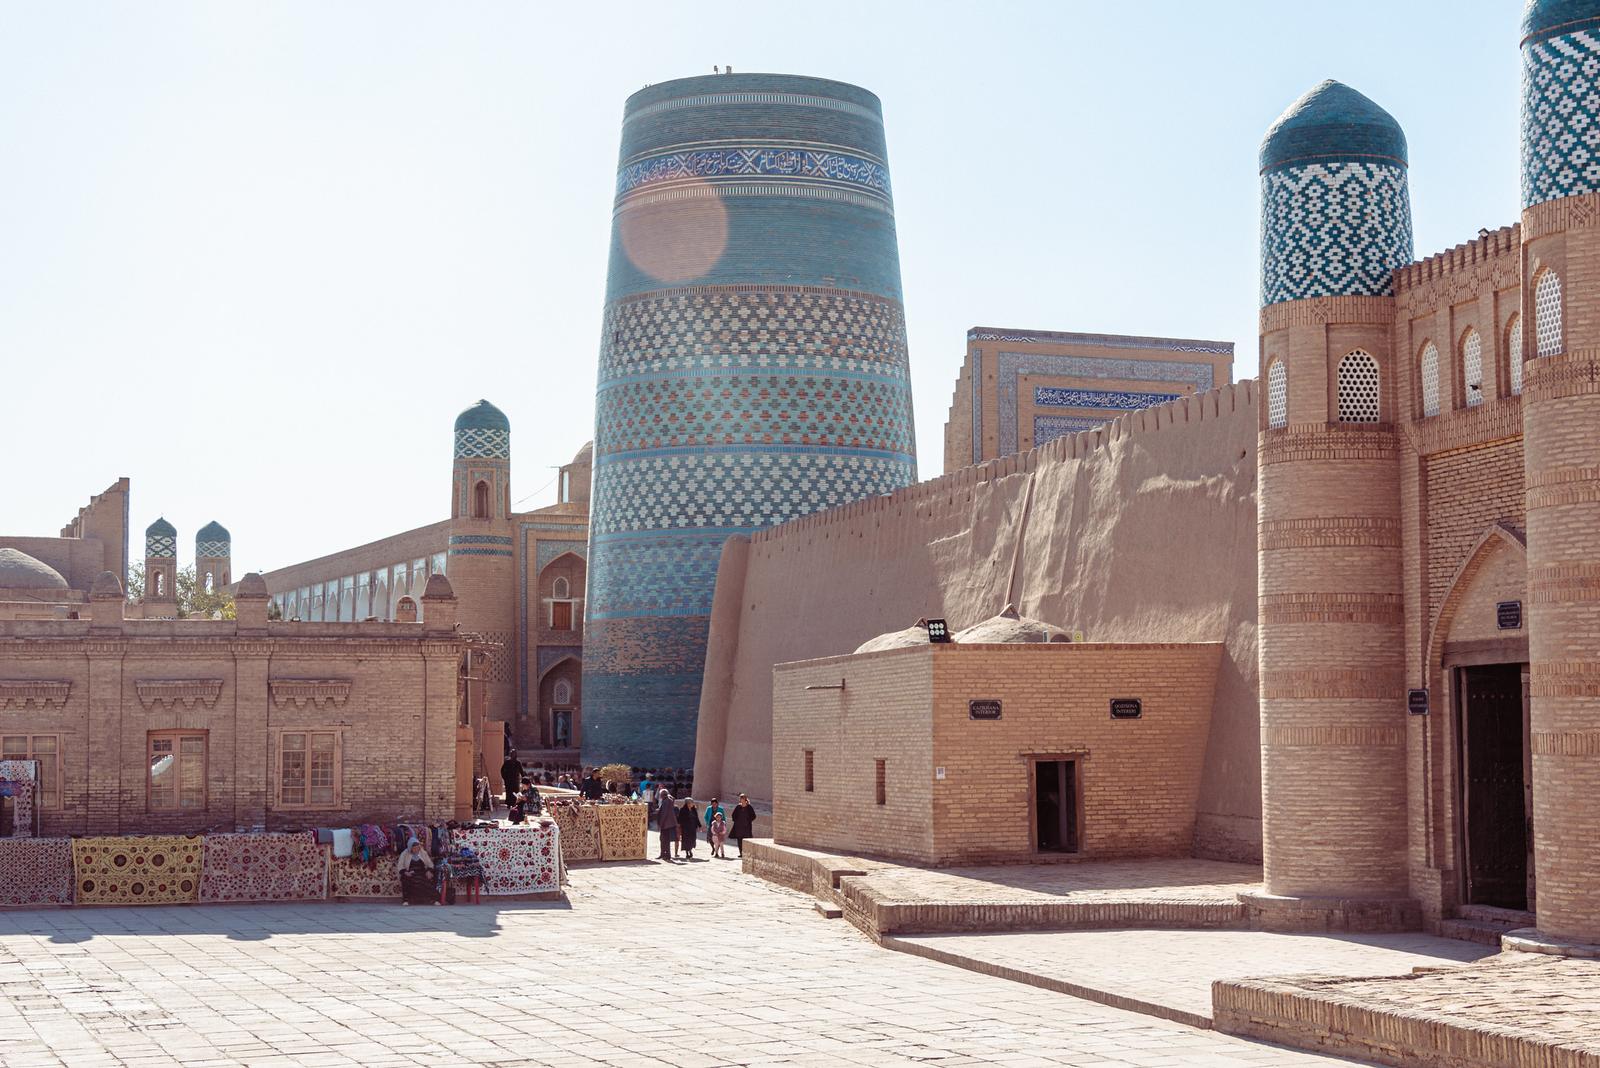 Cái nhìn đầu tiên ở Khiva: Cửa Tây (Ota Darvoza)